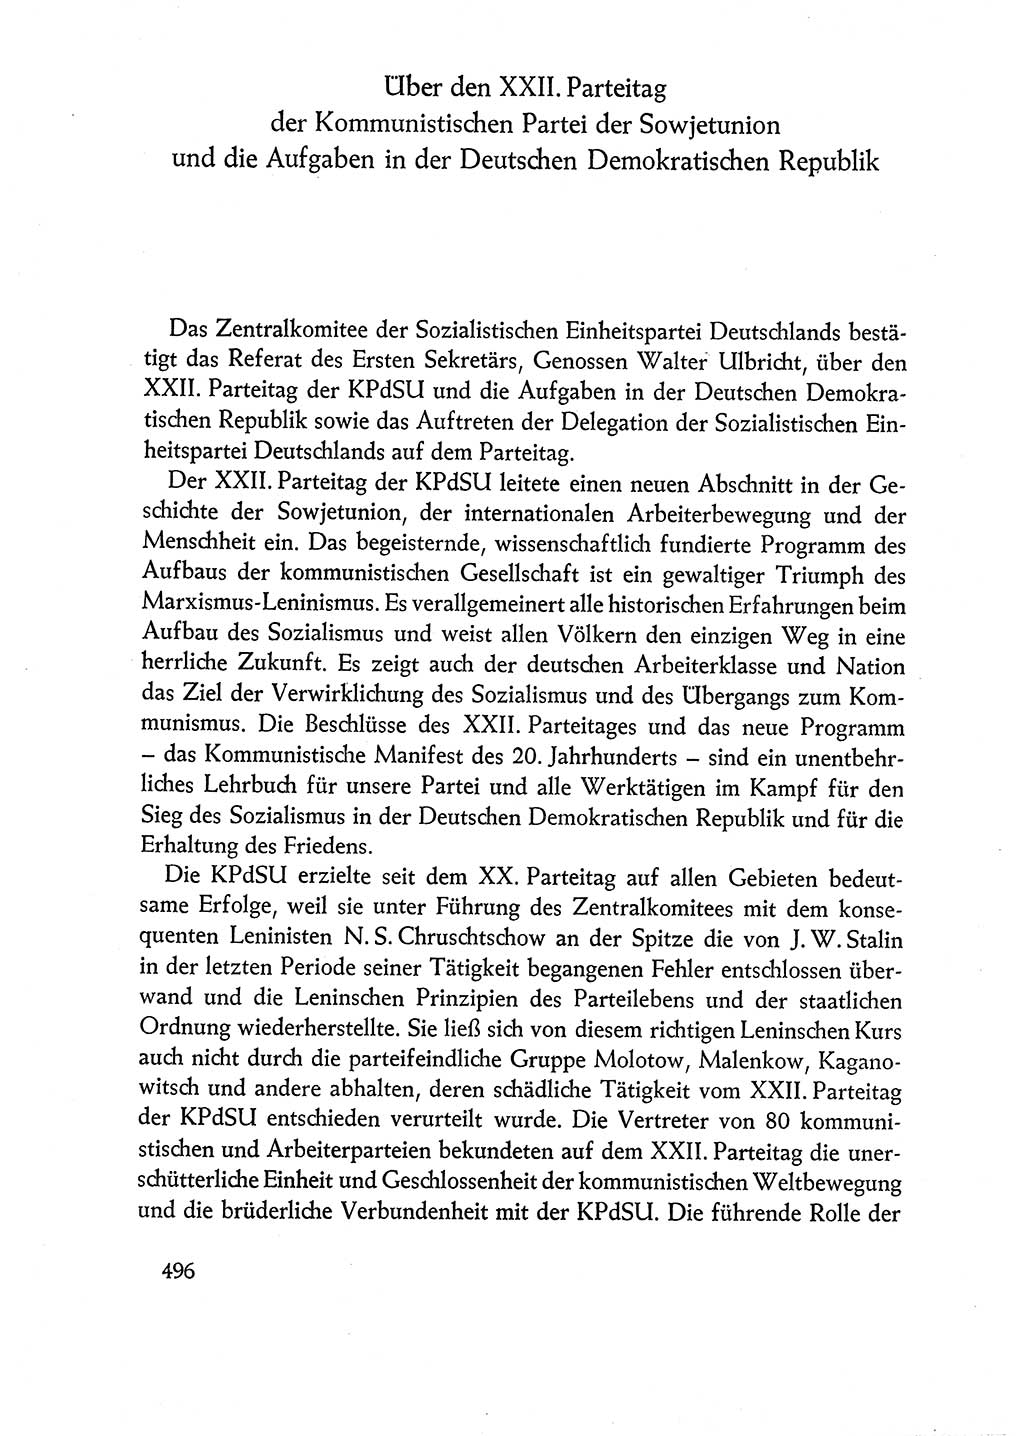 Dokumente der Sozialistischen Einheitspartei Deutschlands (SED) [Deutsche Demokratische Republik (DDR)] 1960-1961, Seite 496 (Dok. SED DDR 1960-1961, S. 496)